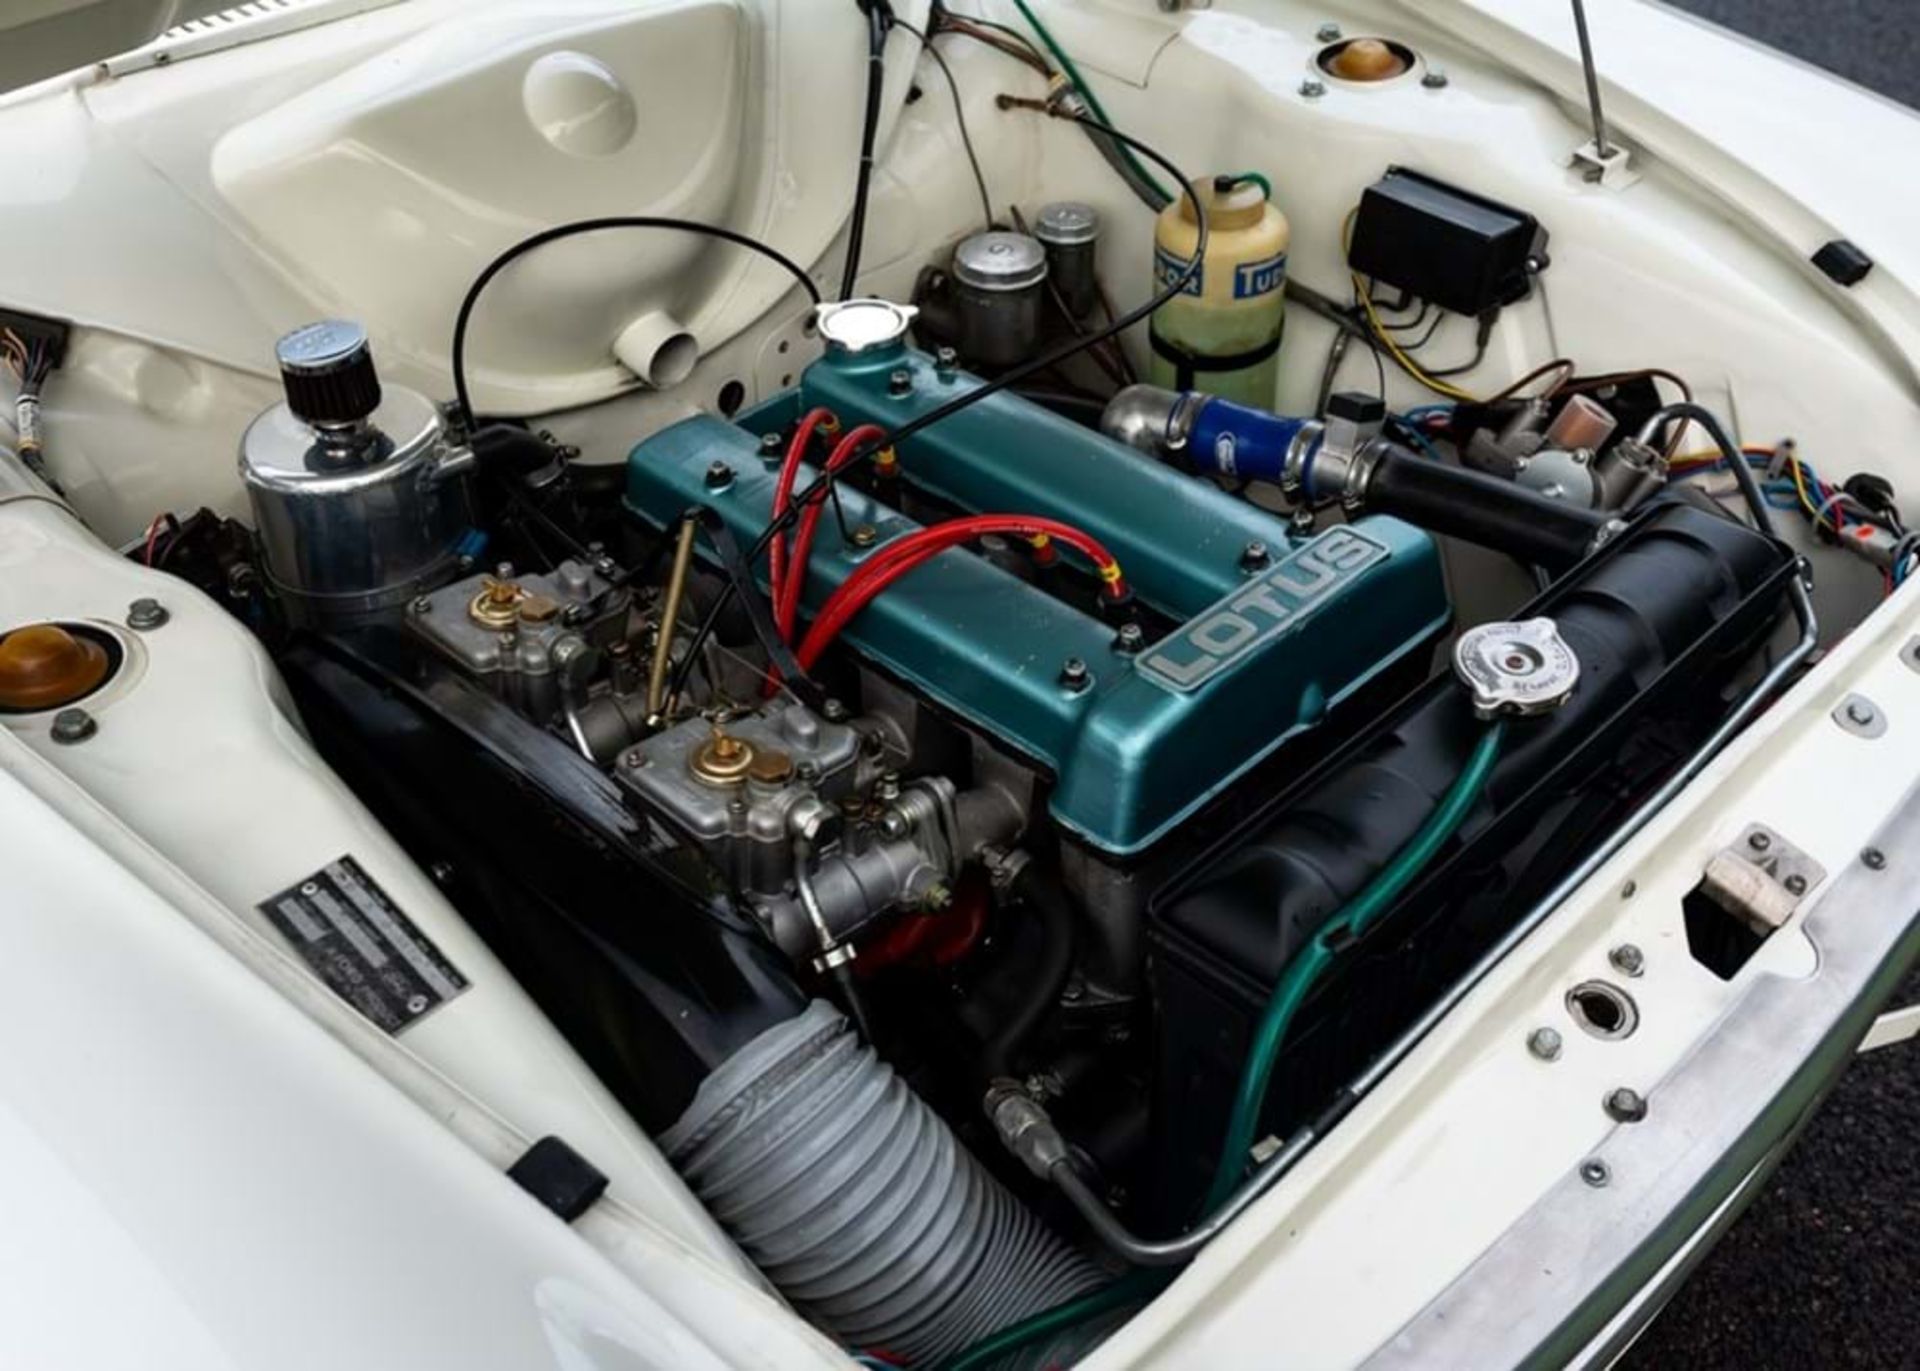 1966 Ford Lotus Cortina Mk. I - Image 5 of 10